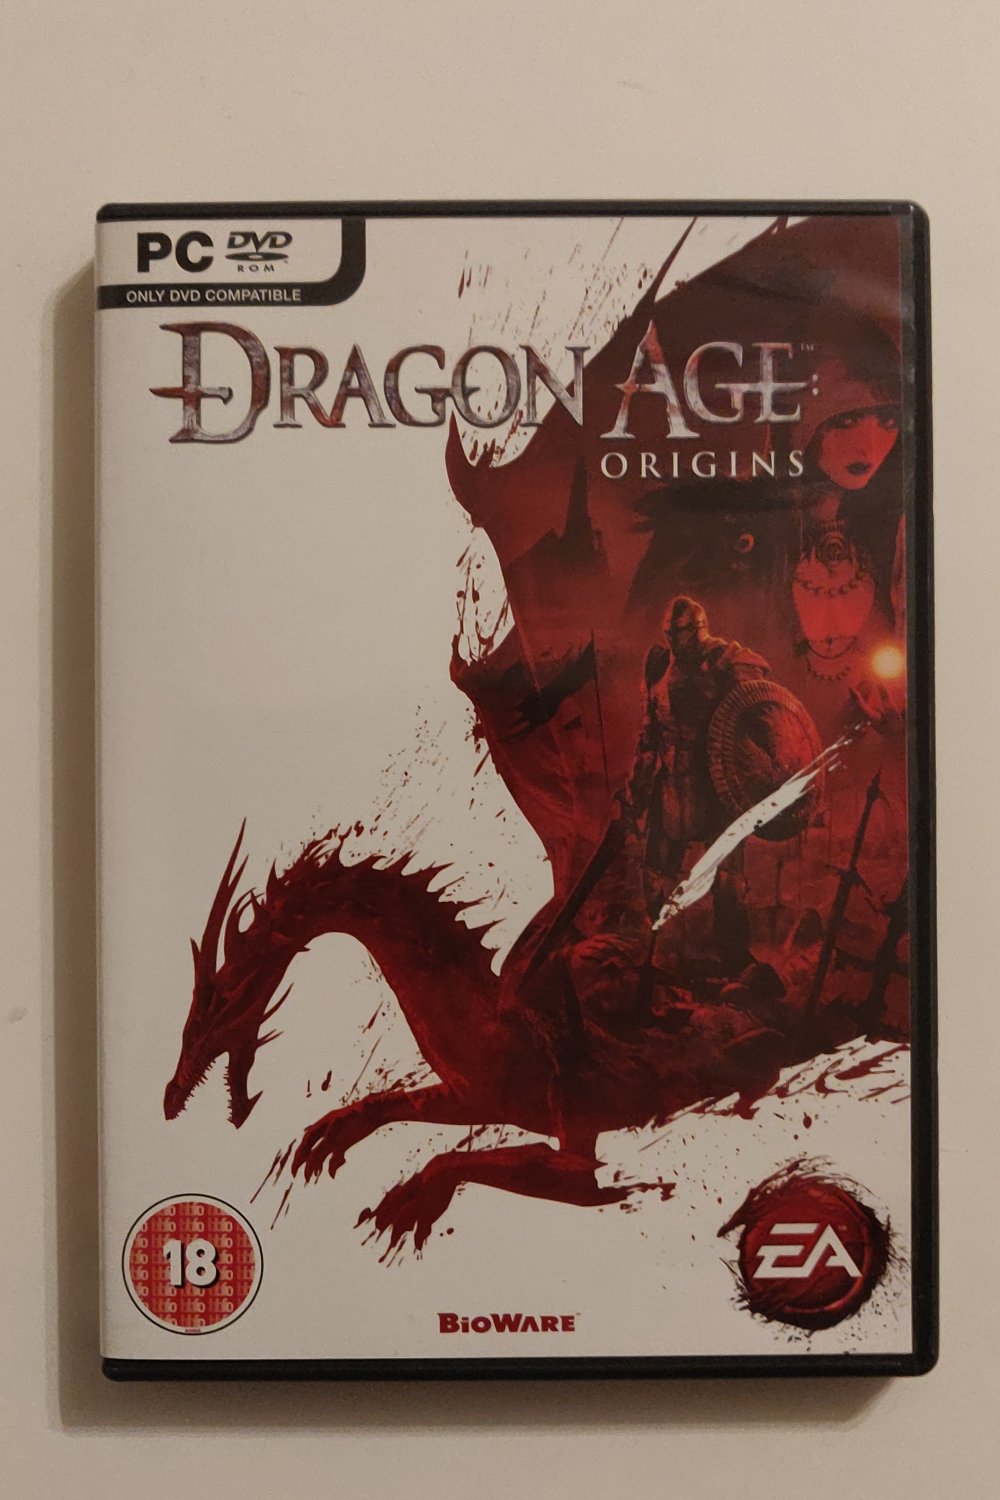 Dragon Age Origins (PC) (CIB) - Picture 1 of 1